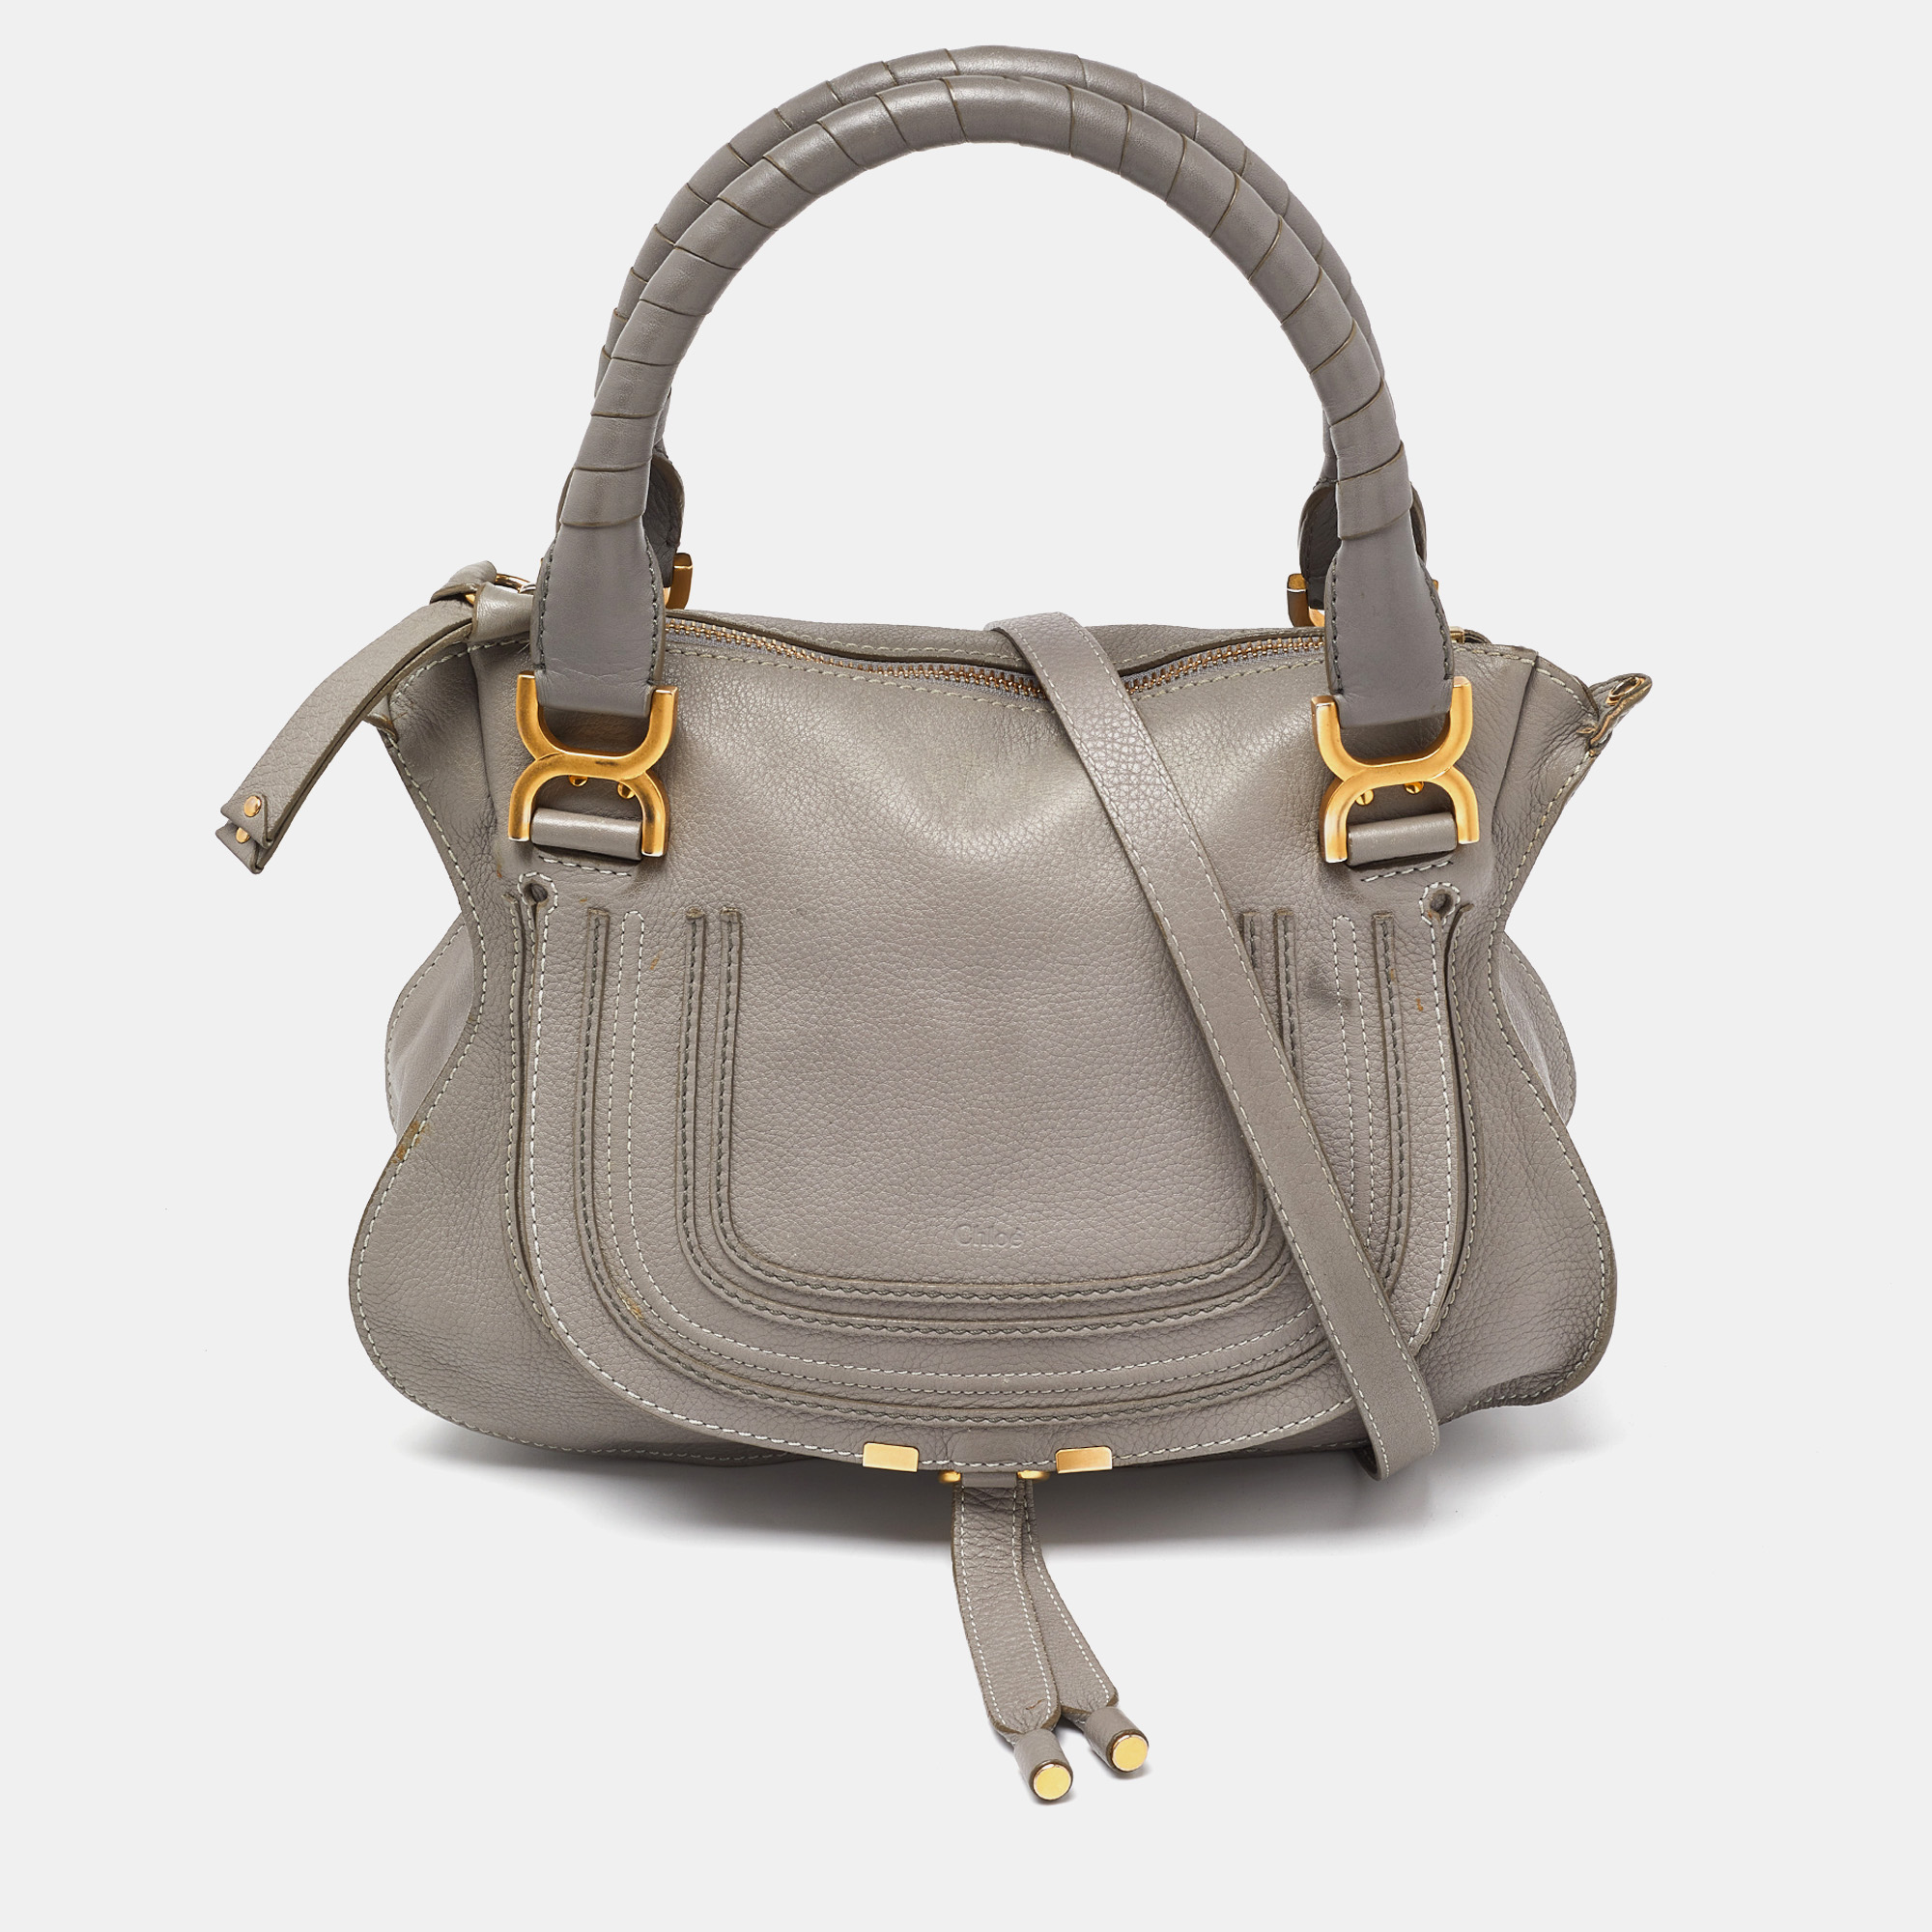 Chloe grey leather medium marcie satchel